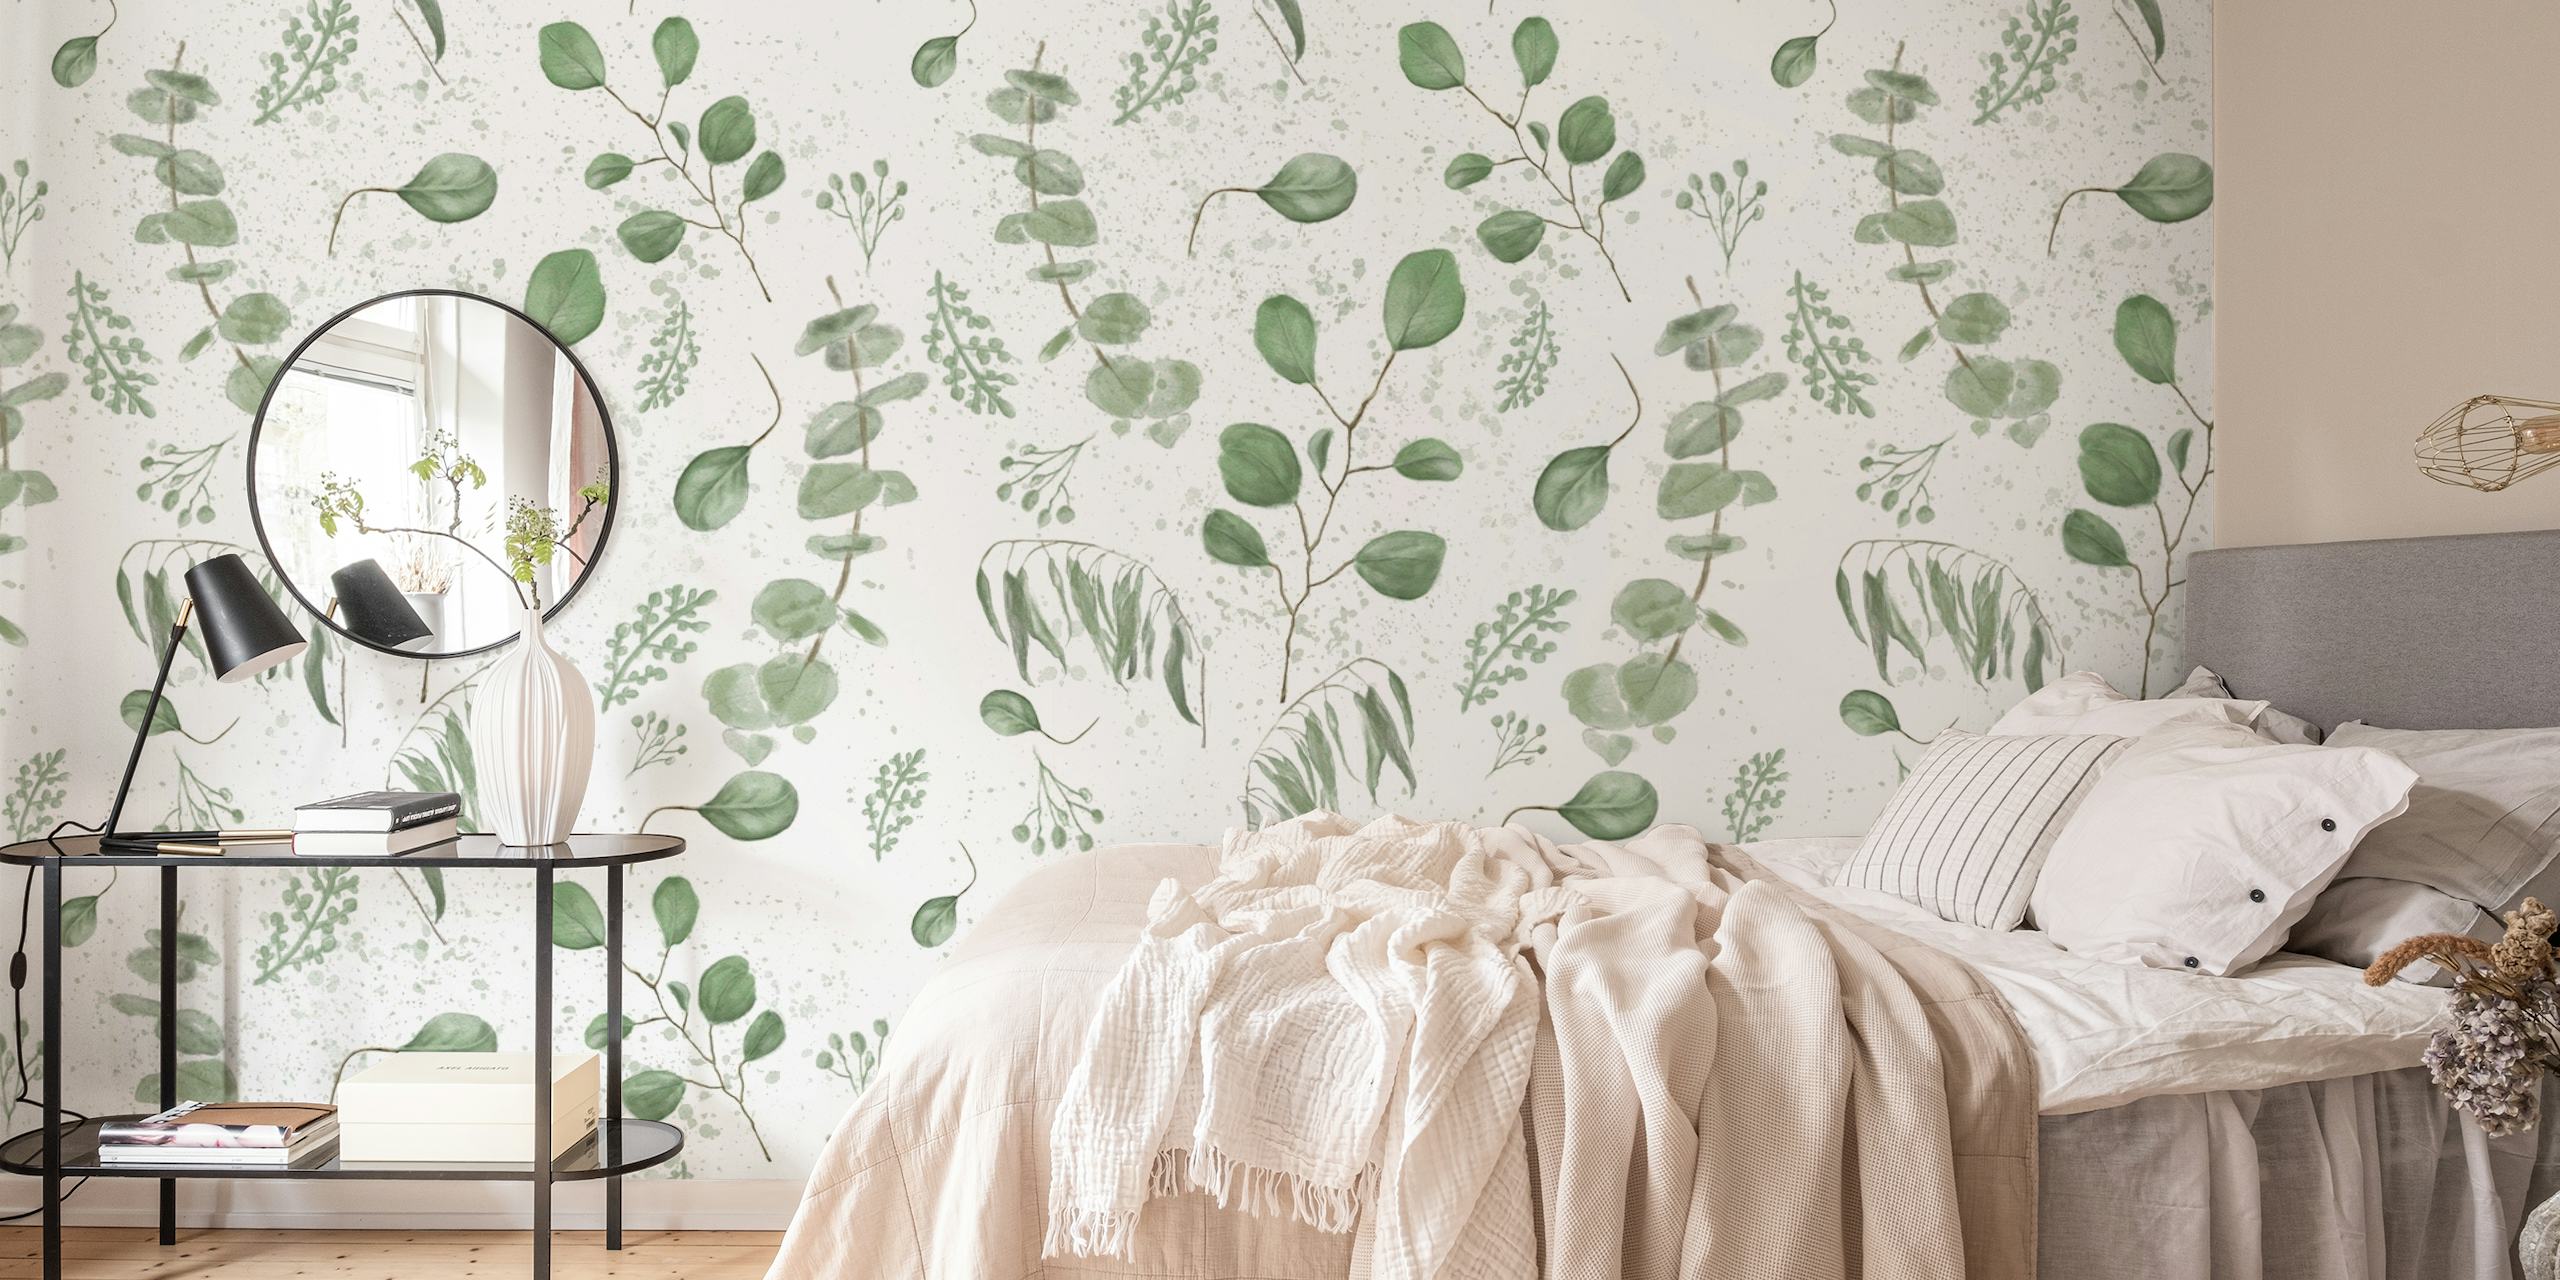 Papier peint mural à motif d'eucalyptus aquarelle dans des tons vert pâle